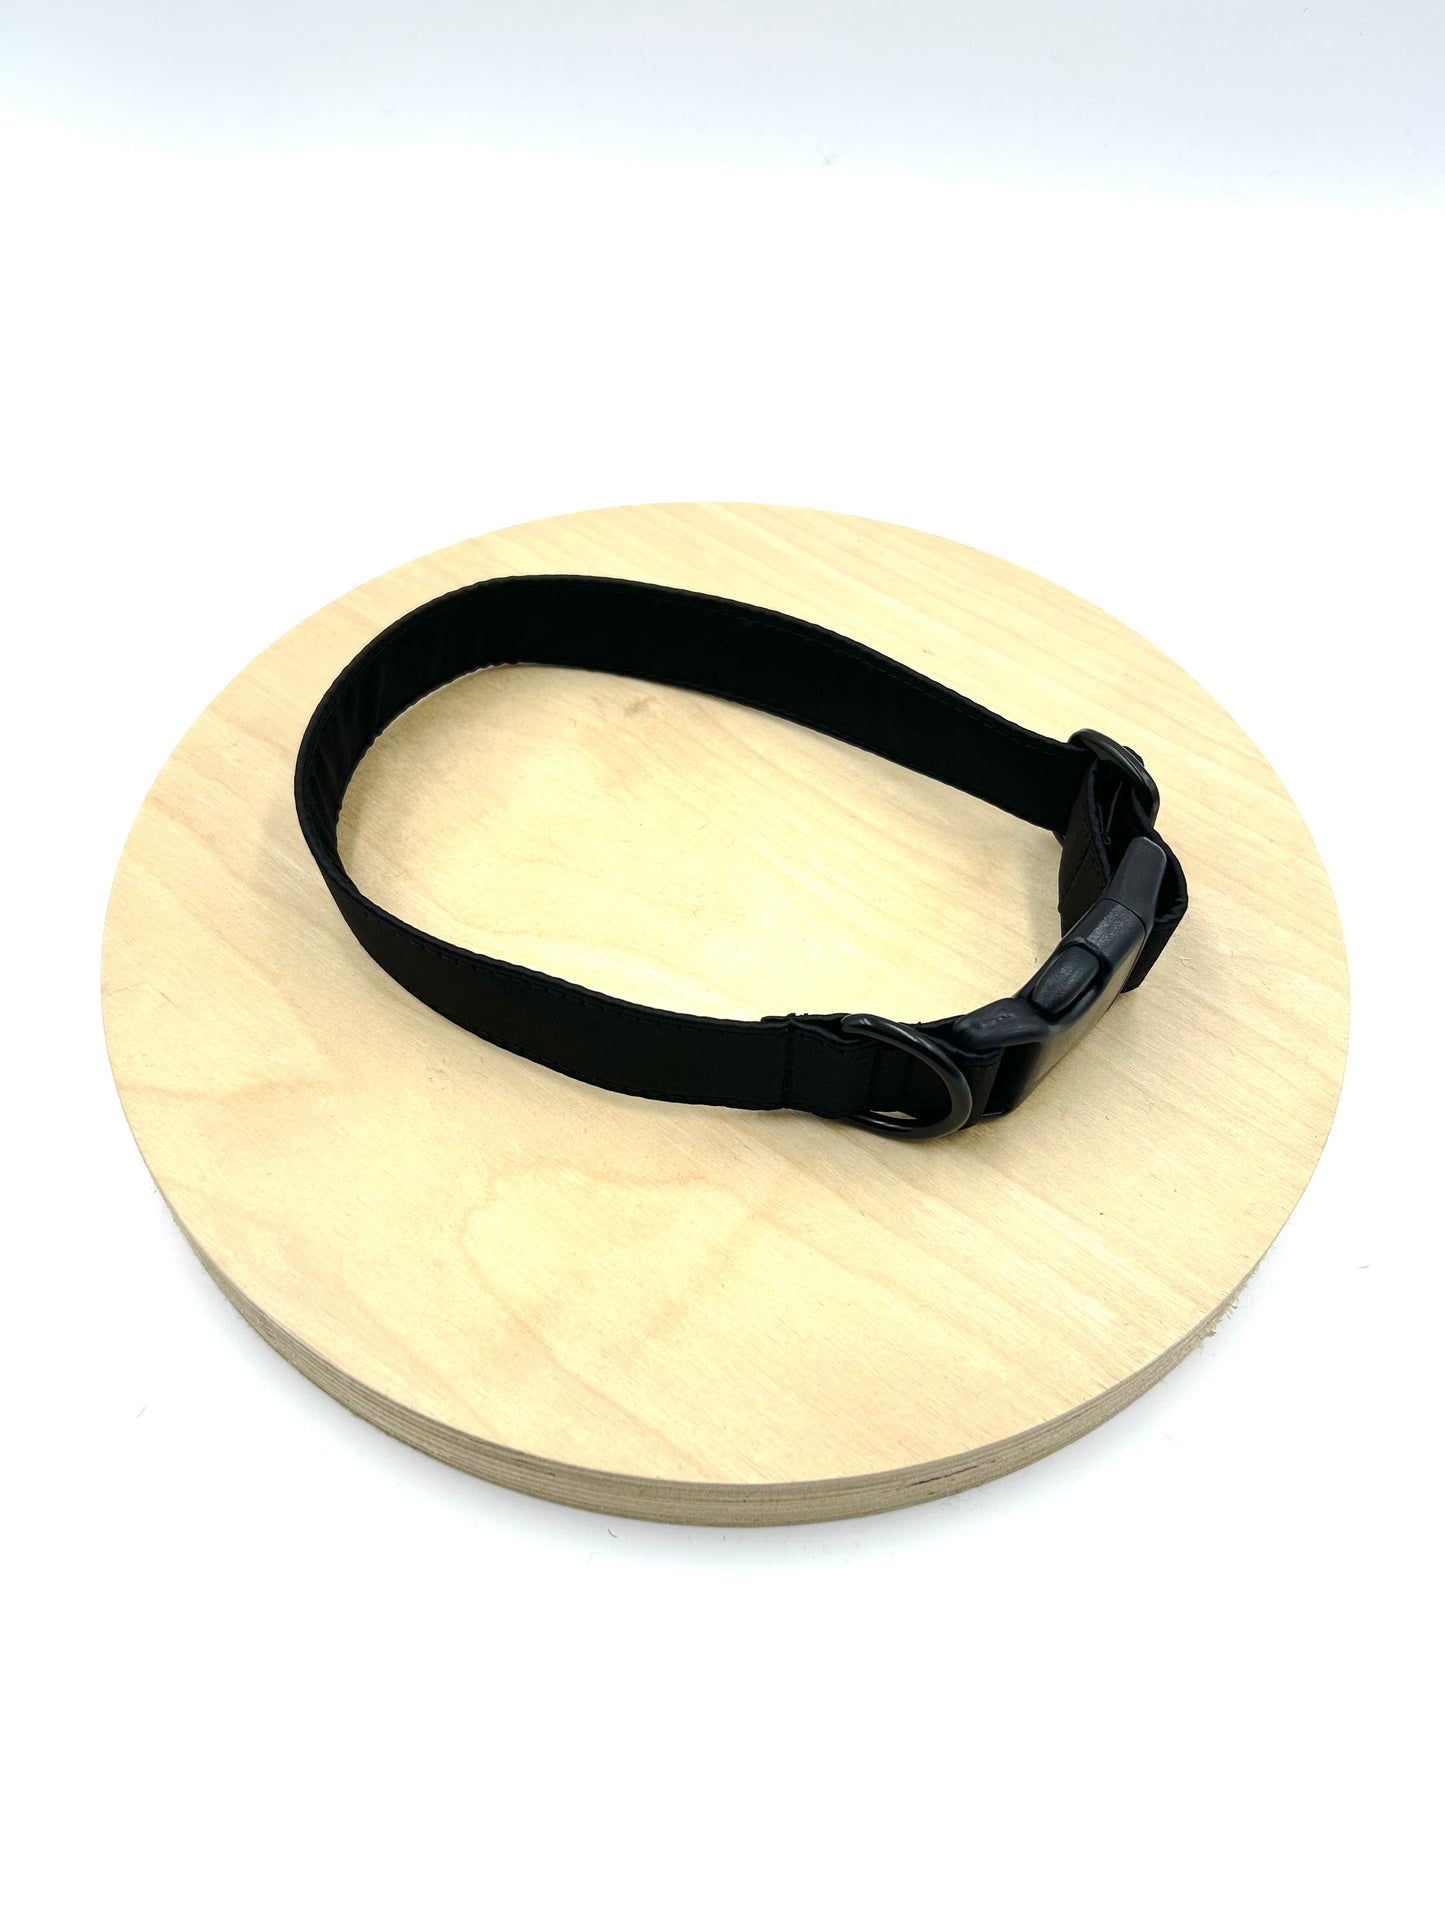 Black Satin Wedding Dog Collar